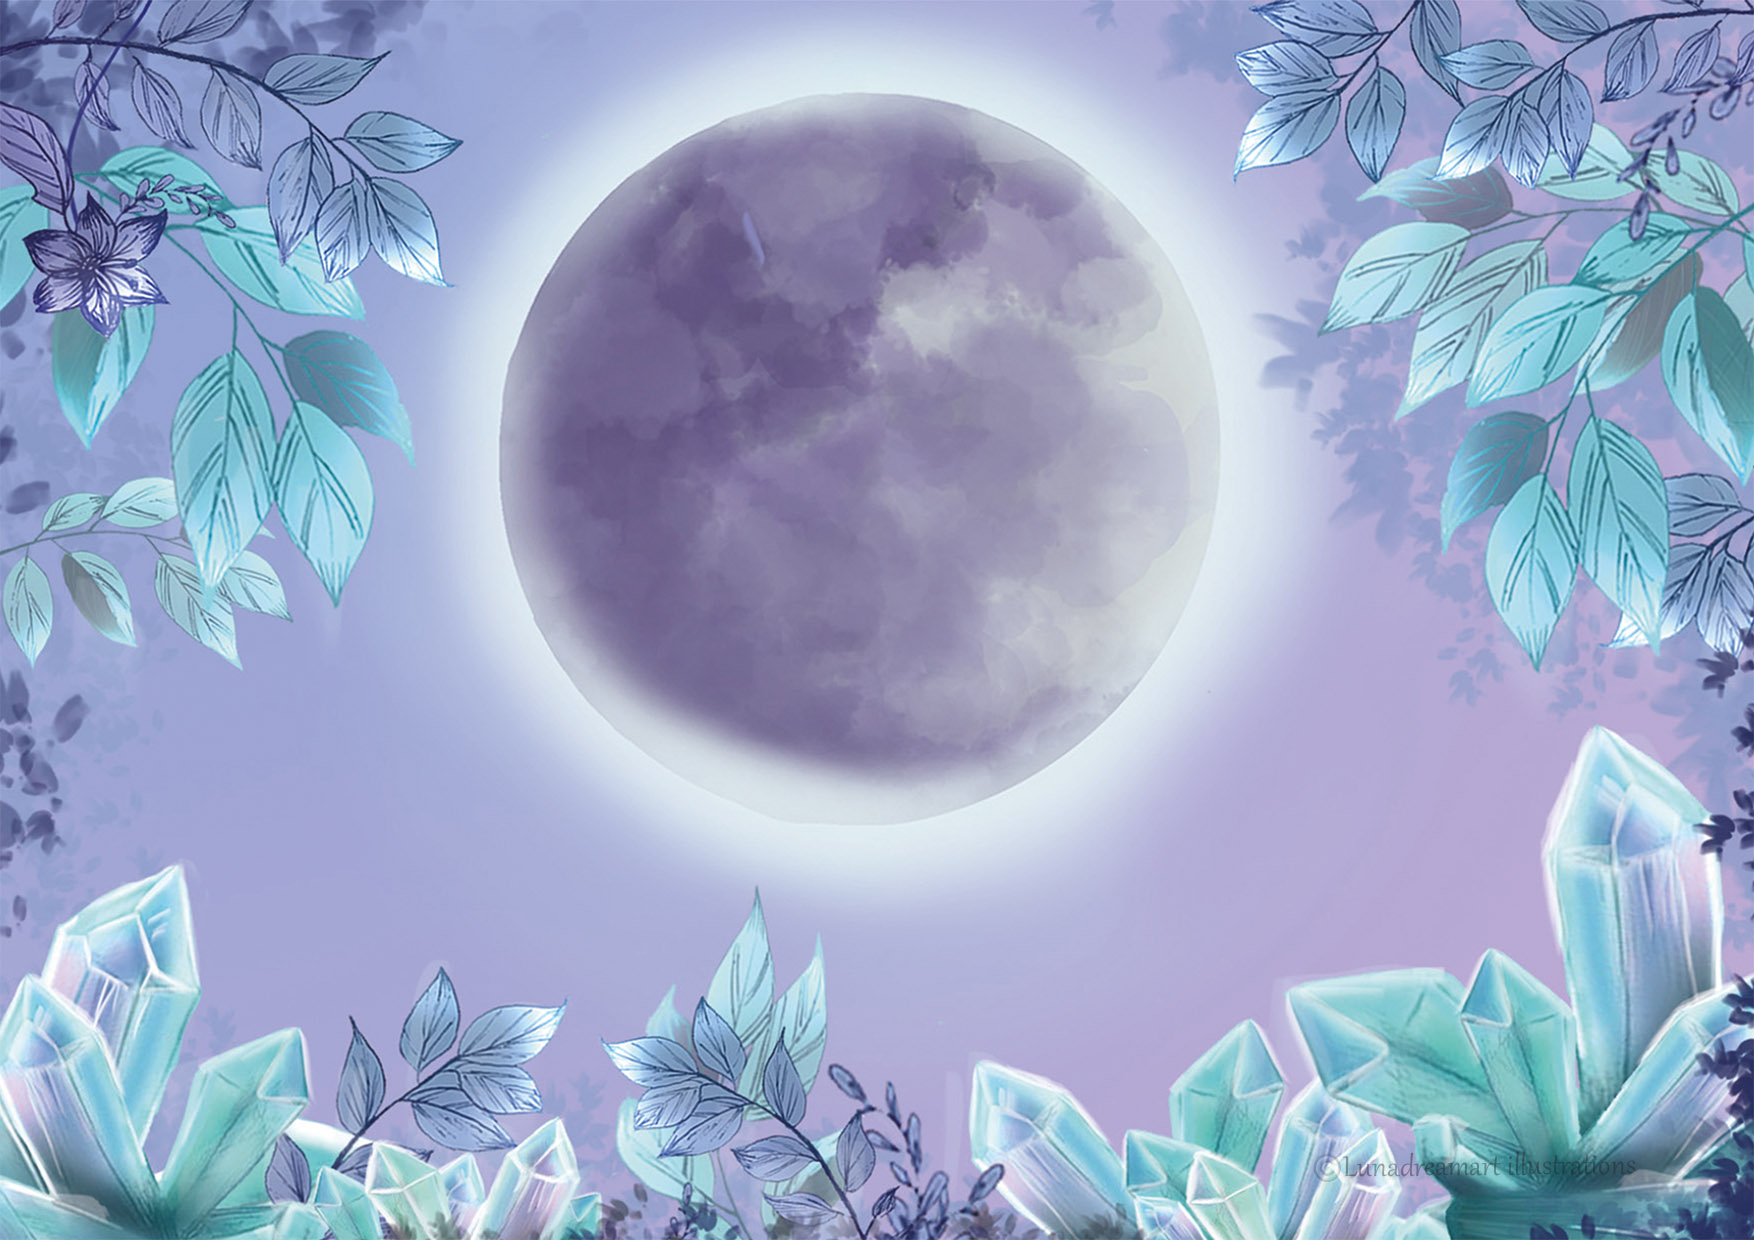 Crystal moon